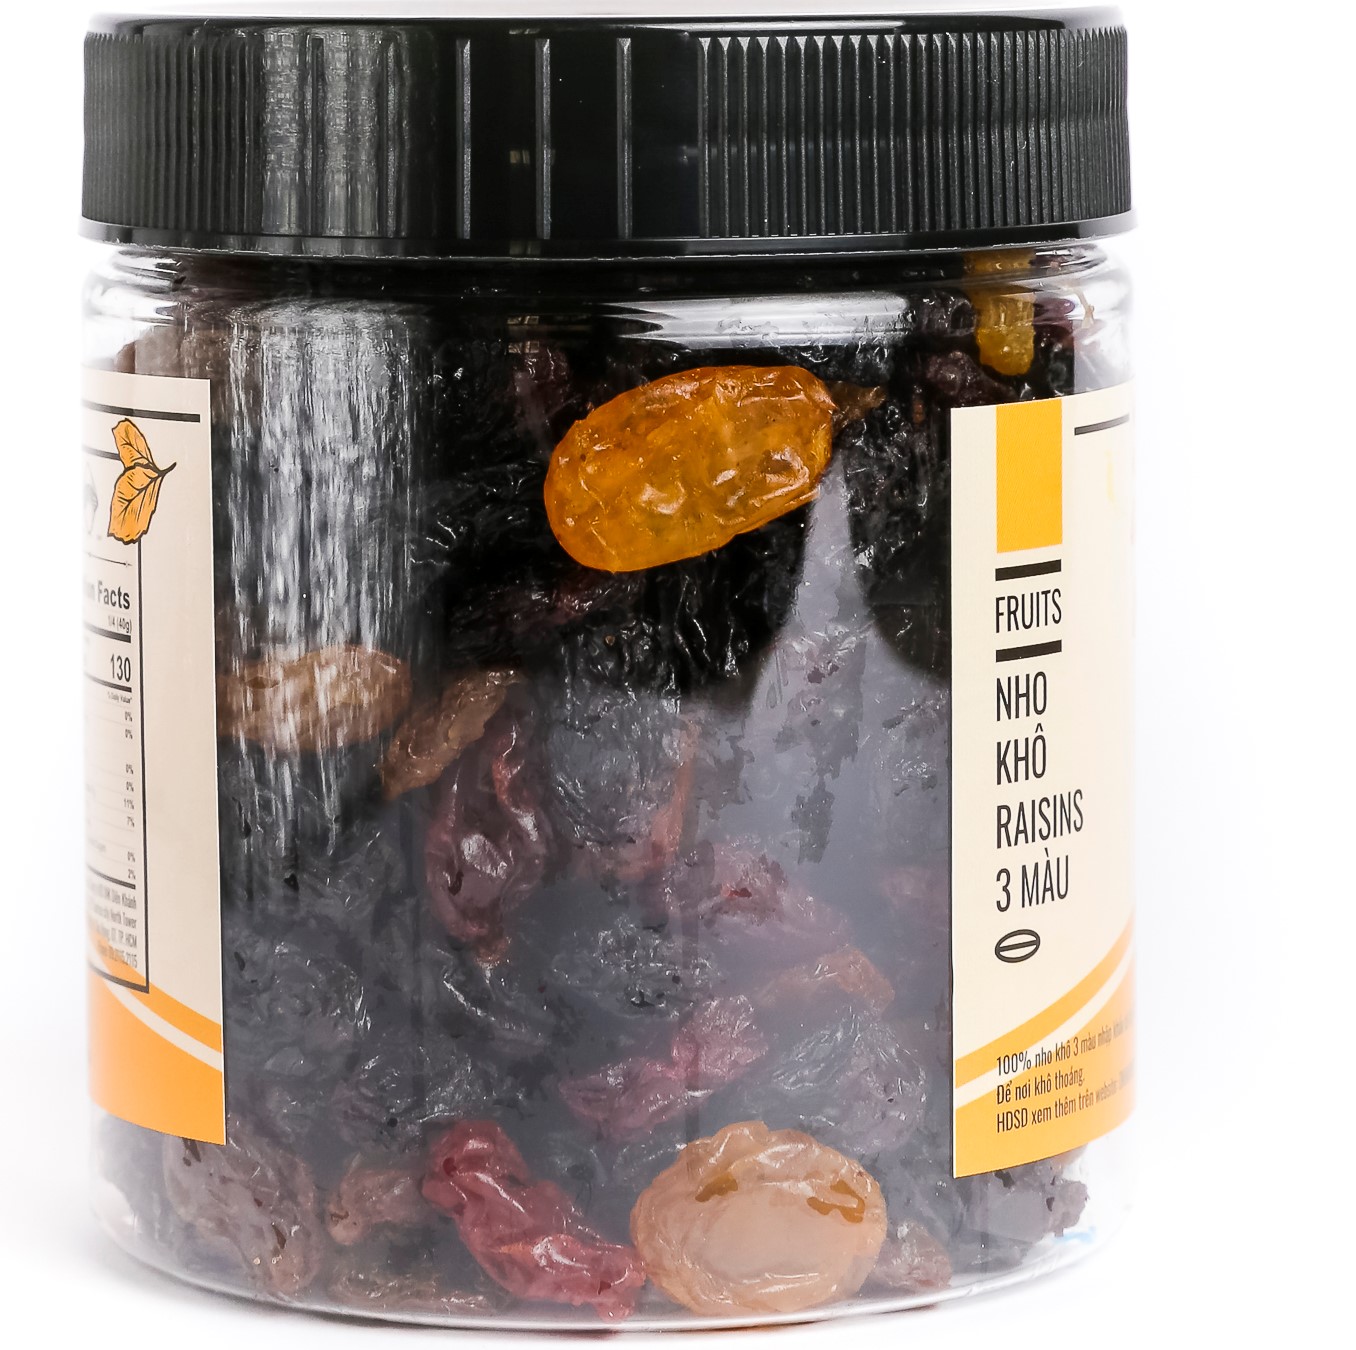 Nho Khô Raisins 3 Màu Không Hạt DK Harvest (Hàng Nhập Khẩu Chile)  - Thơm ngon, vị ngọt tự nhiên, không pha trộn thêm đường hay chất tạo ngọt